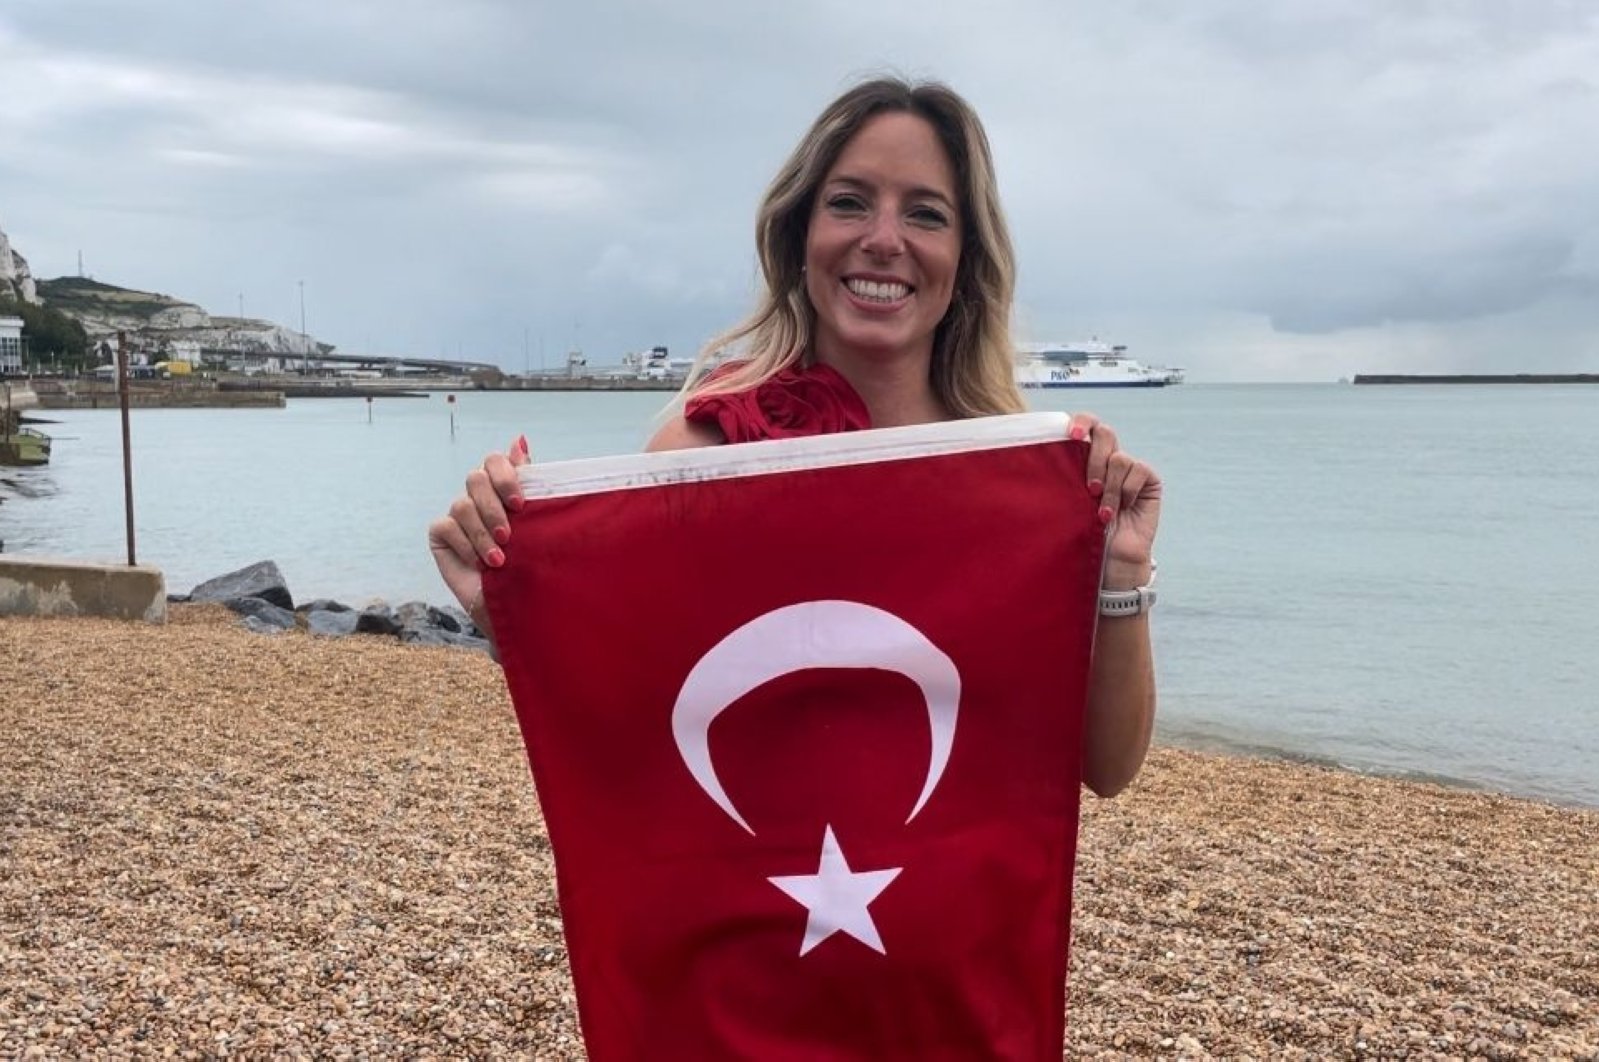 Perenang Turki membuat sejarah dengan menyeberangi Selat Inggris